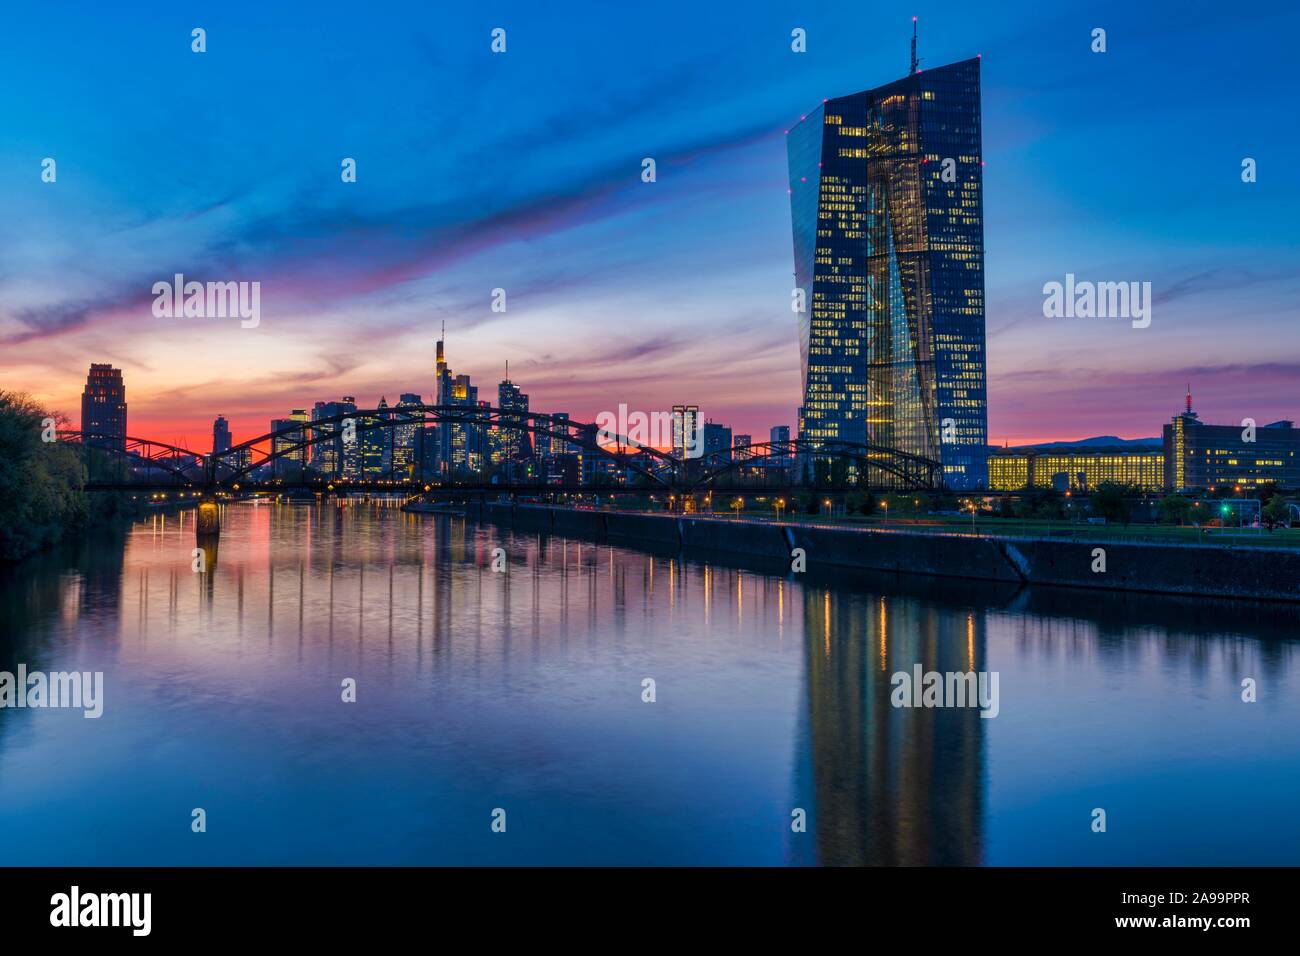 Banca centrale europea (BCE) e dello skyline di Francoforte davanti al tramonto, grattacieli illuminati e riflessi nelle principali, Frankfurt am Main, Hesse Foto Stock